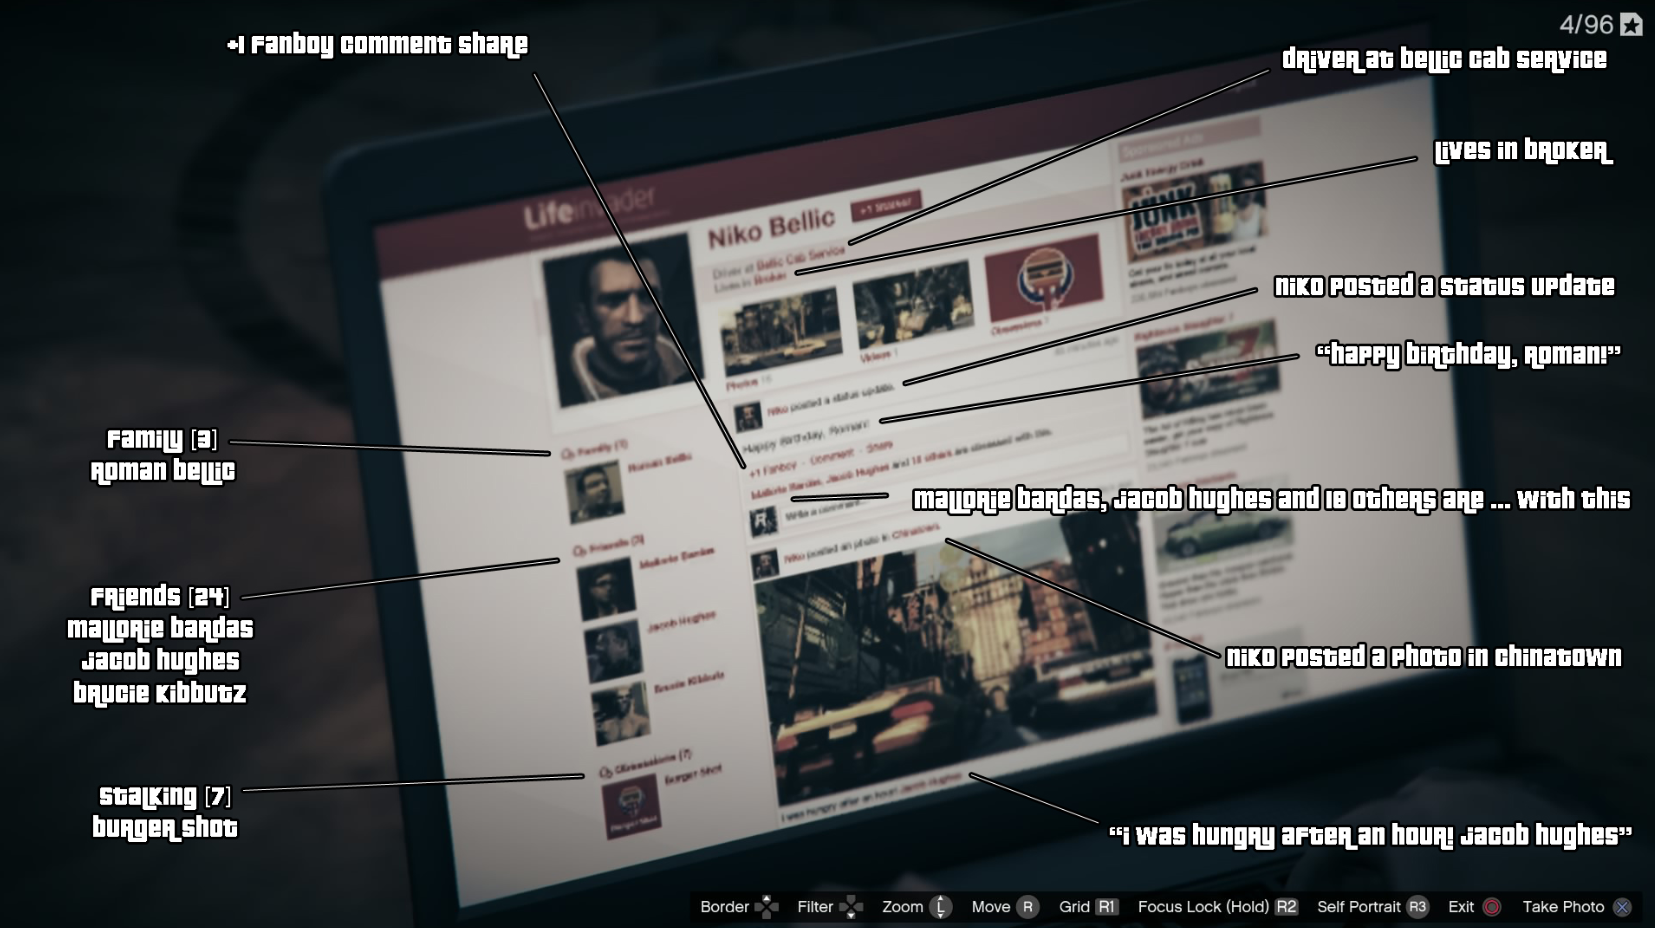 Niko Bellic life invader page in GTA V : r/GTA